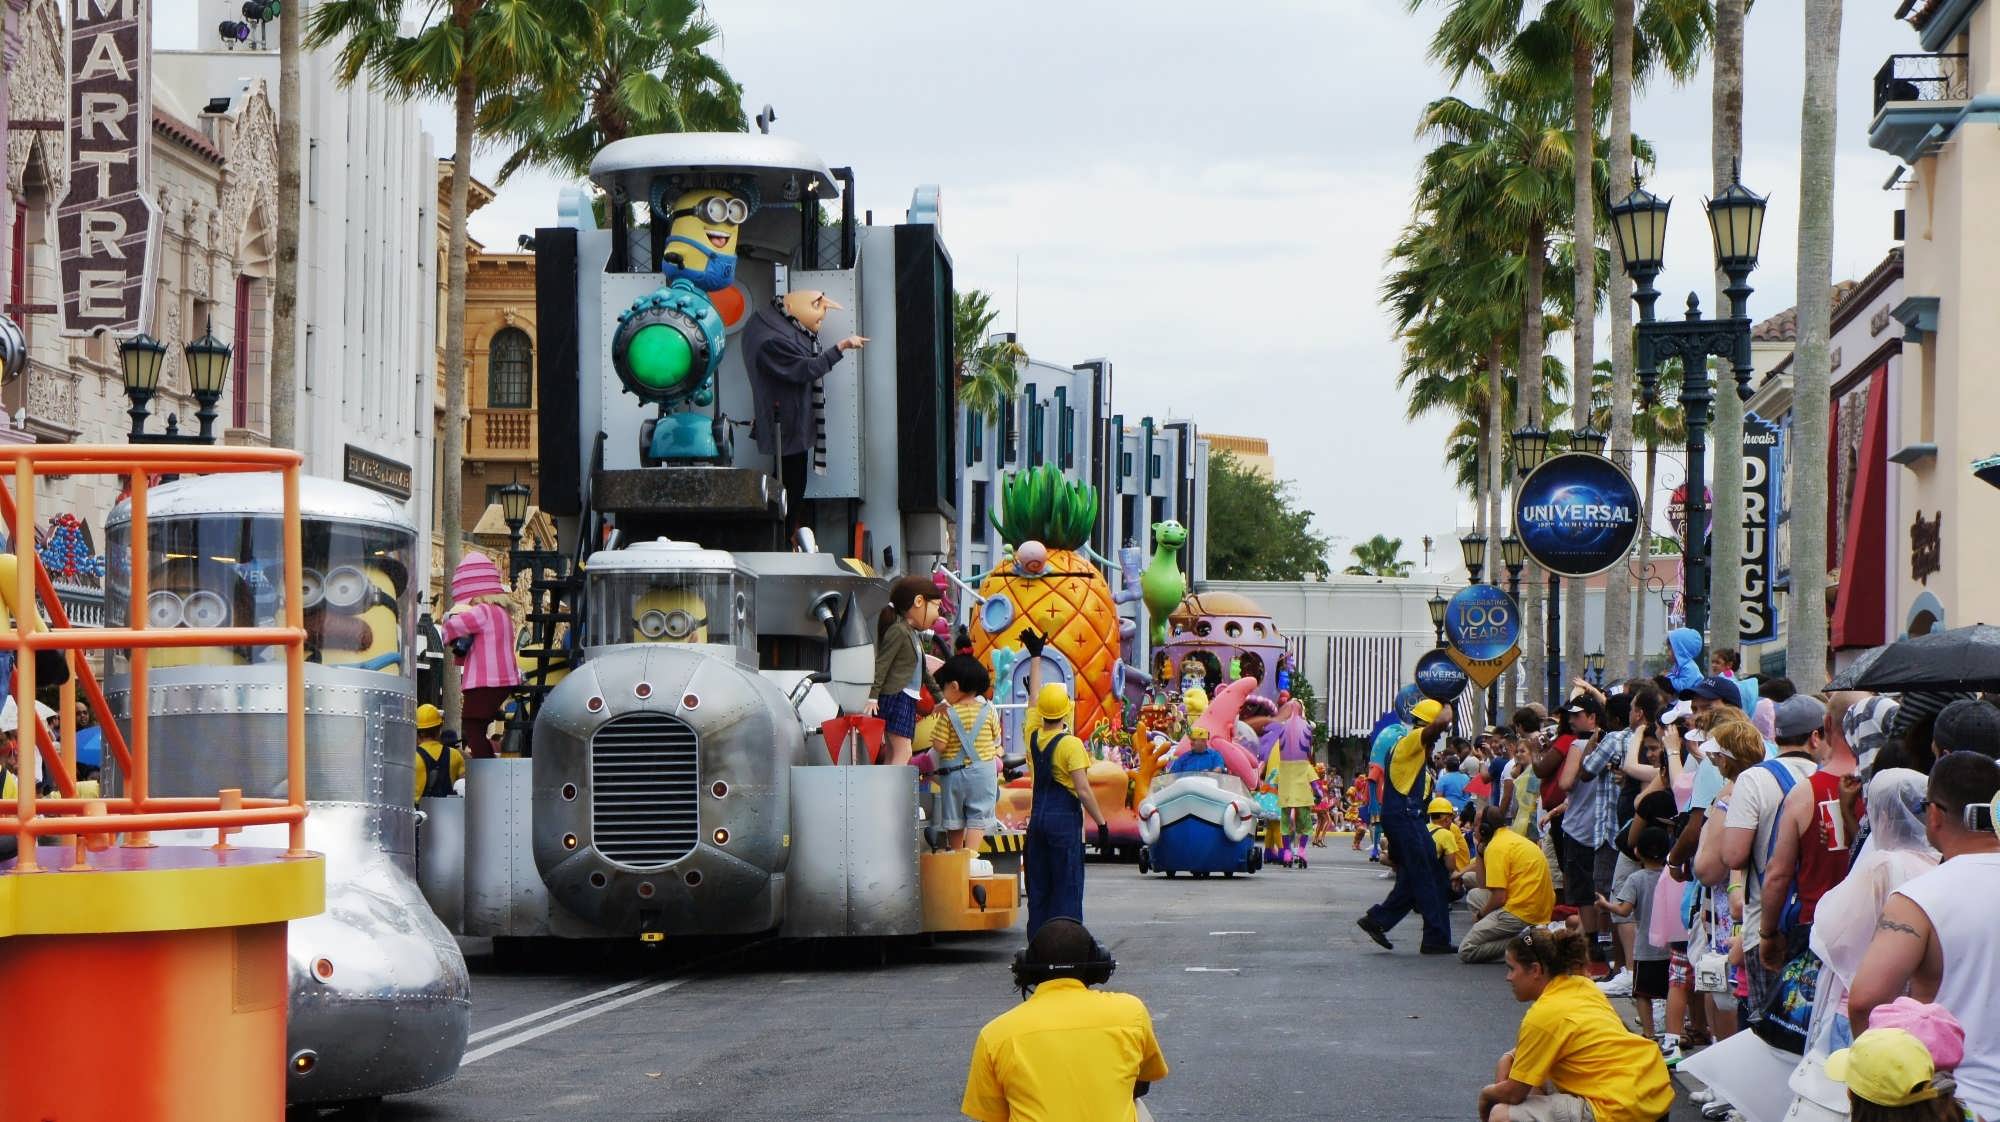 Universal's Superstar Parade at Universal Studios Florida